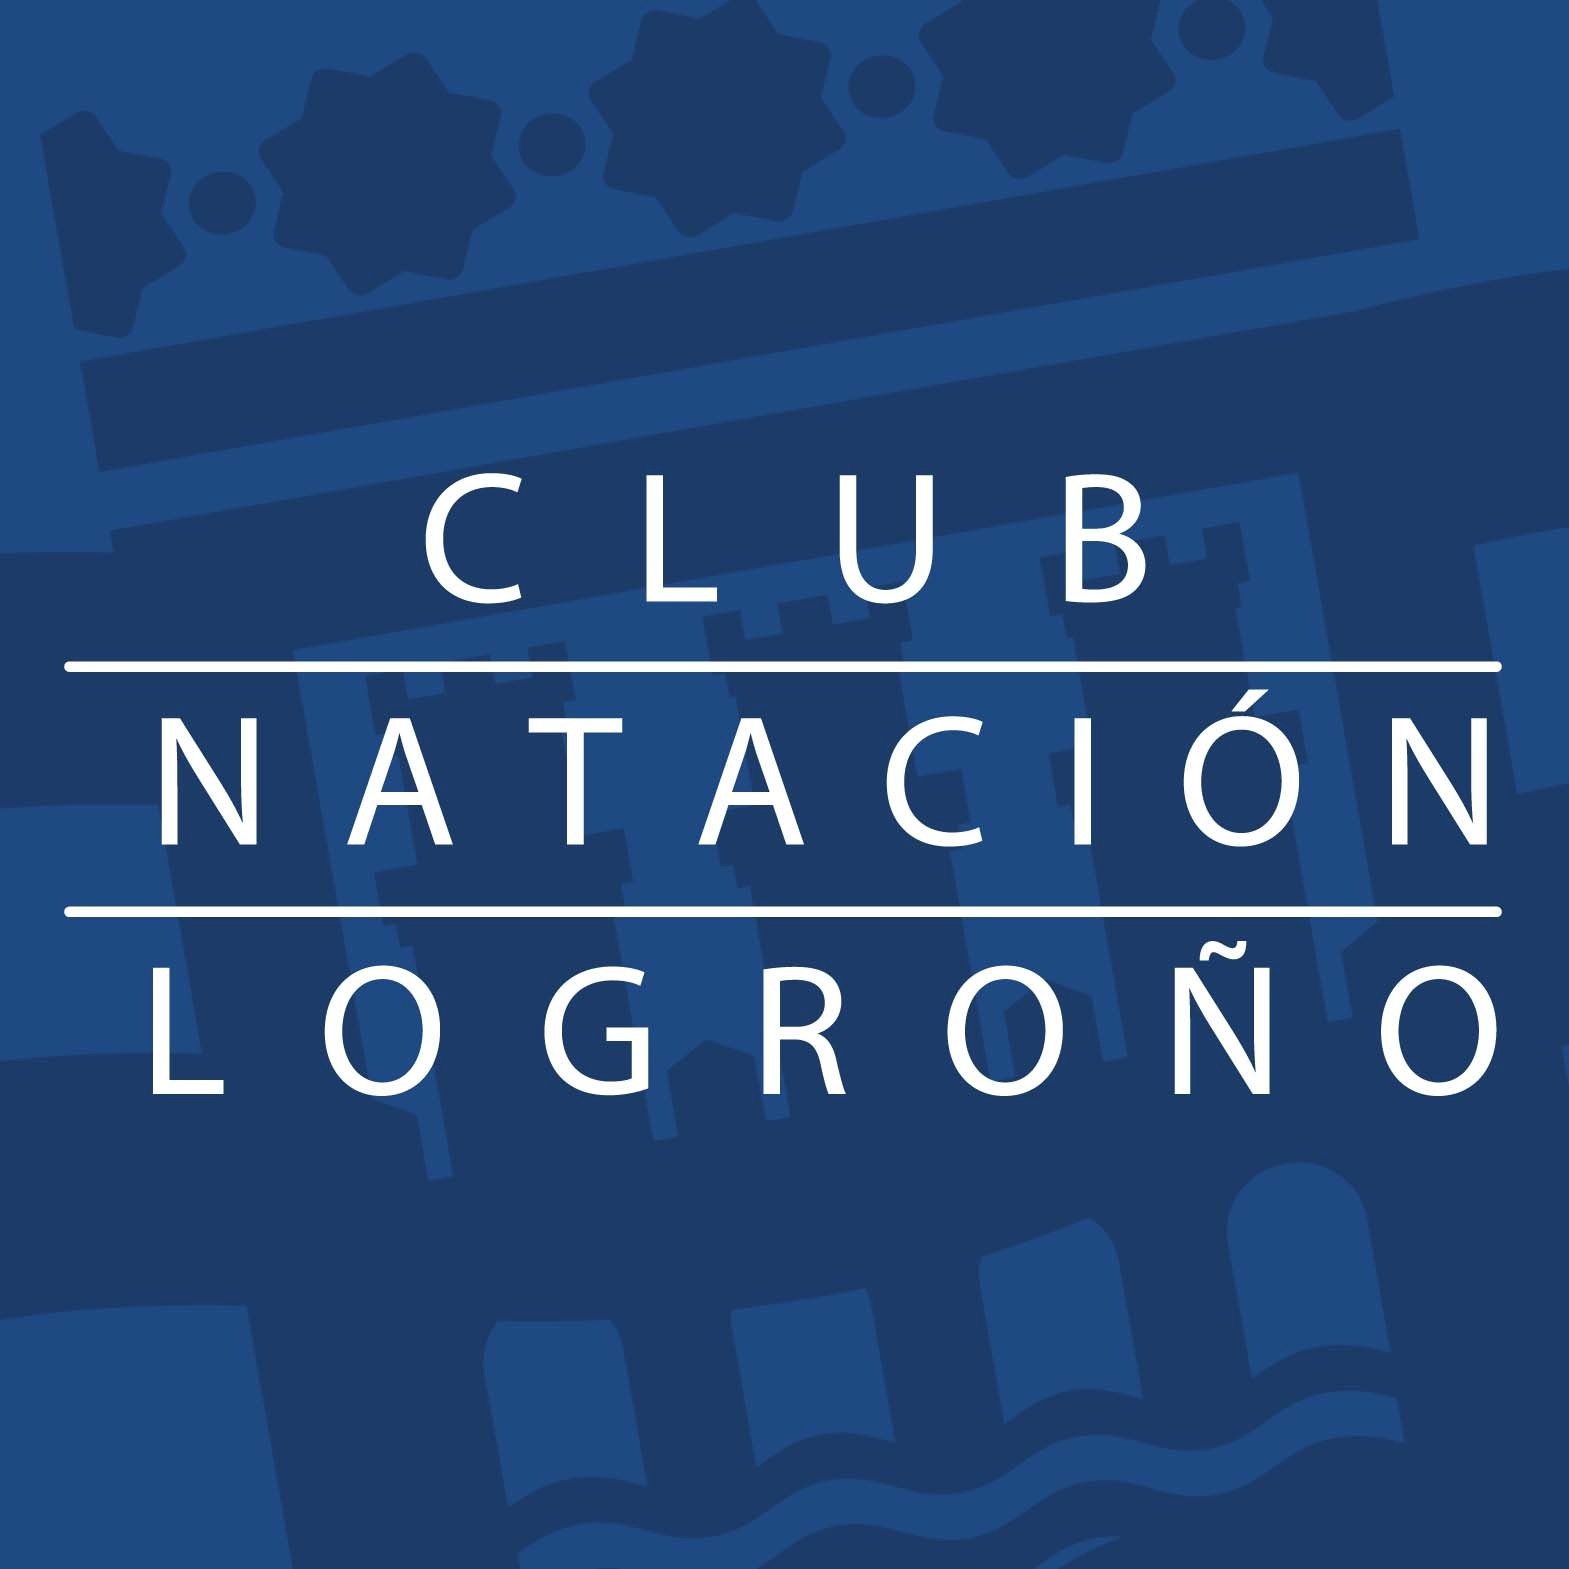 ¡¡¡ Club Natación Logroño !!!